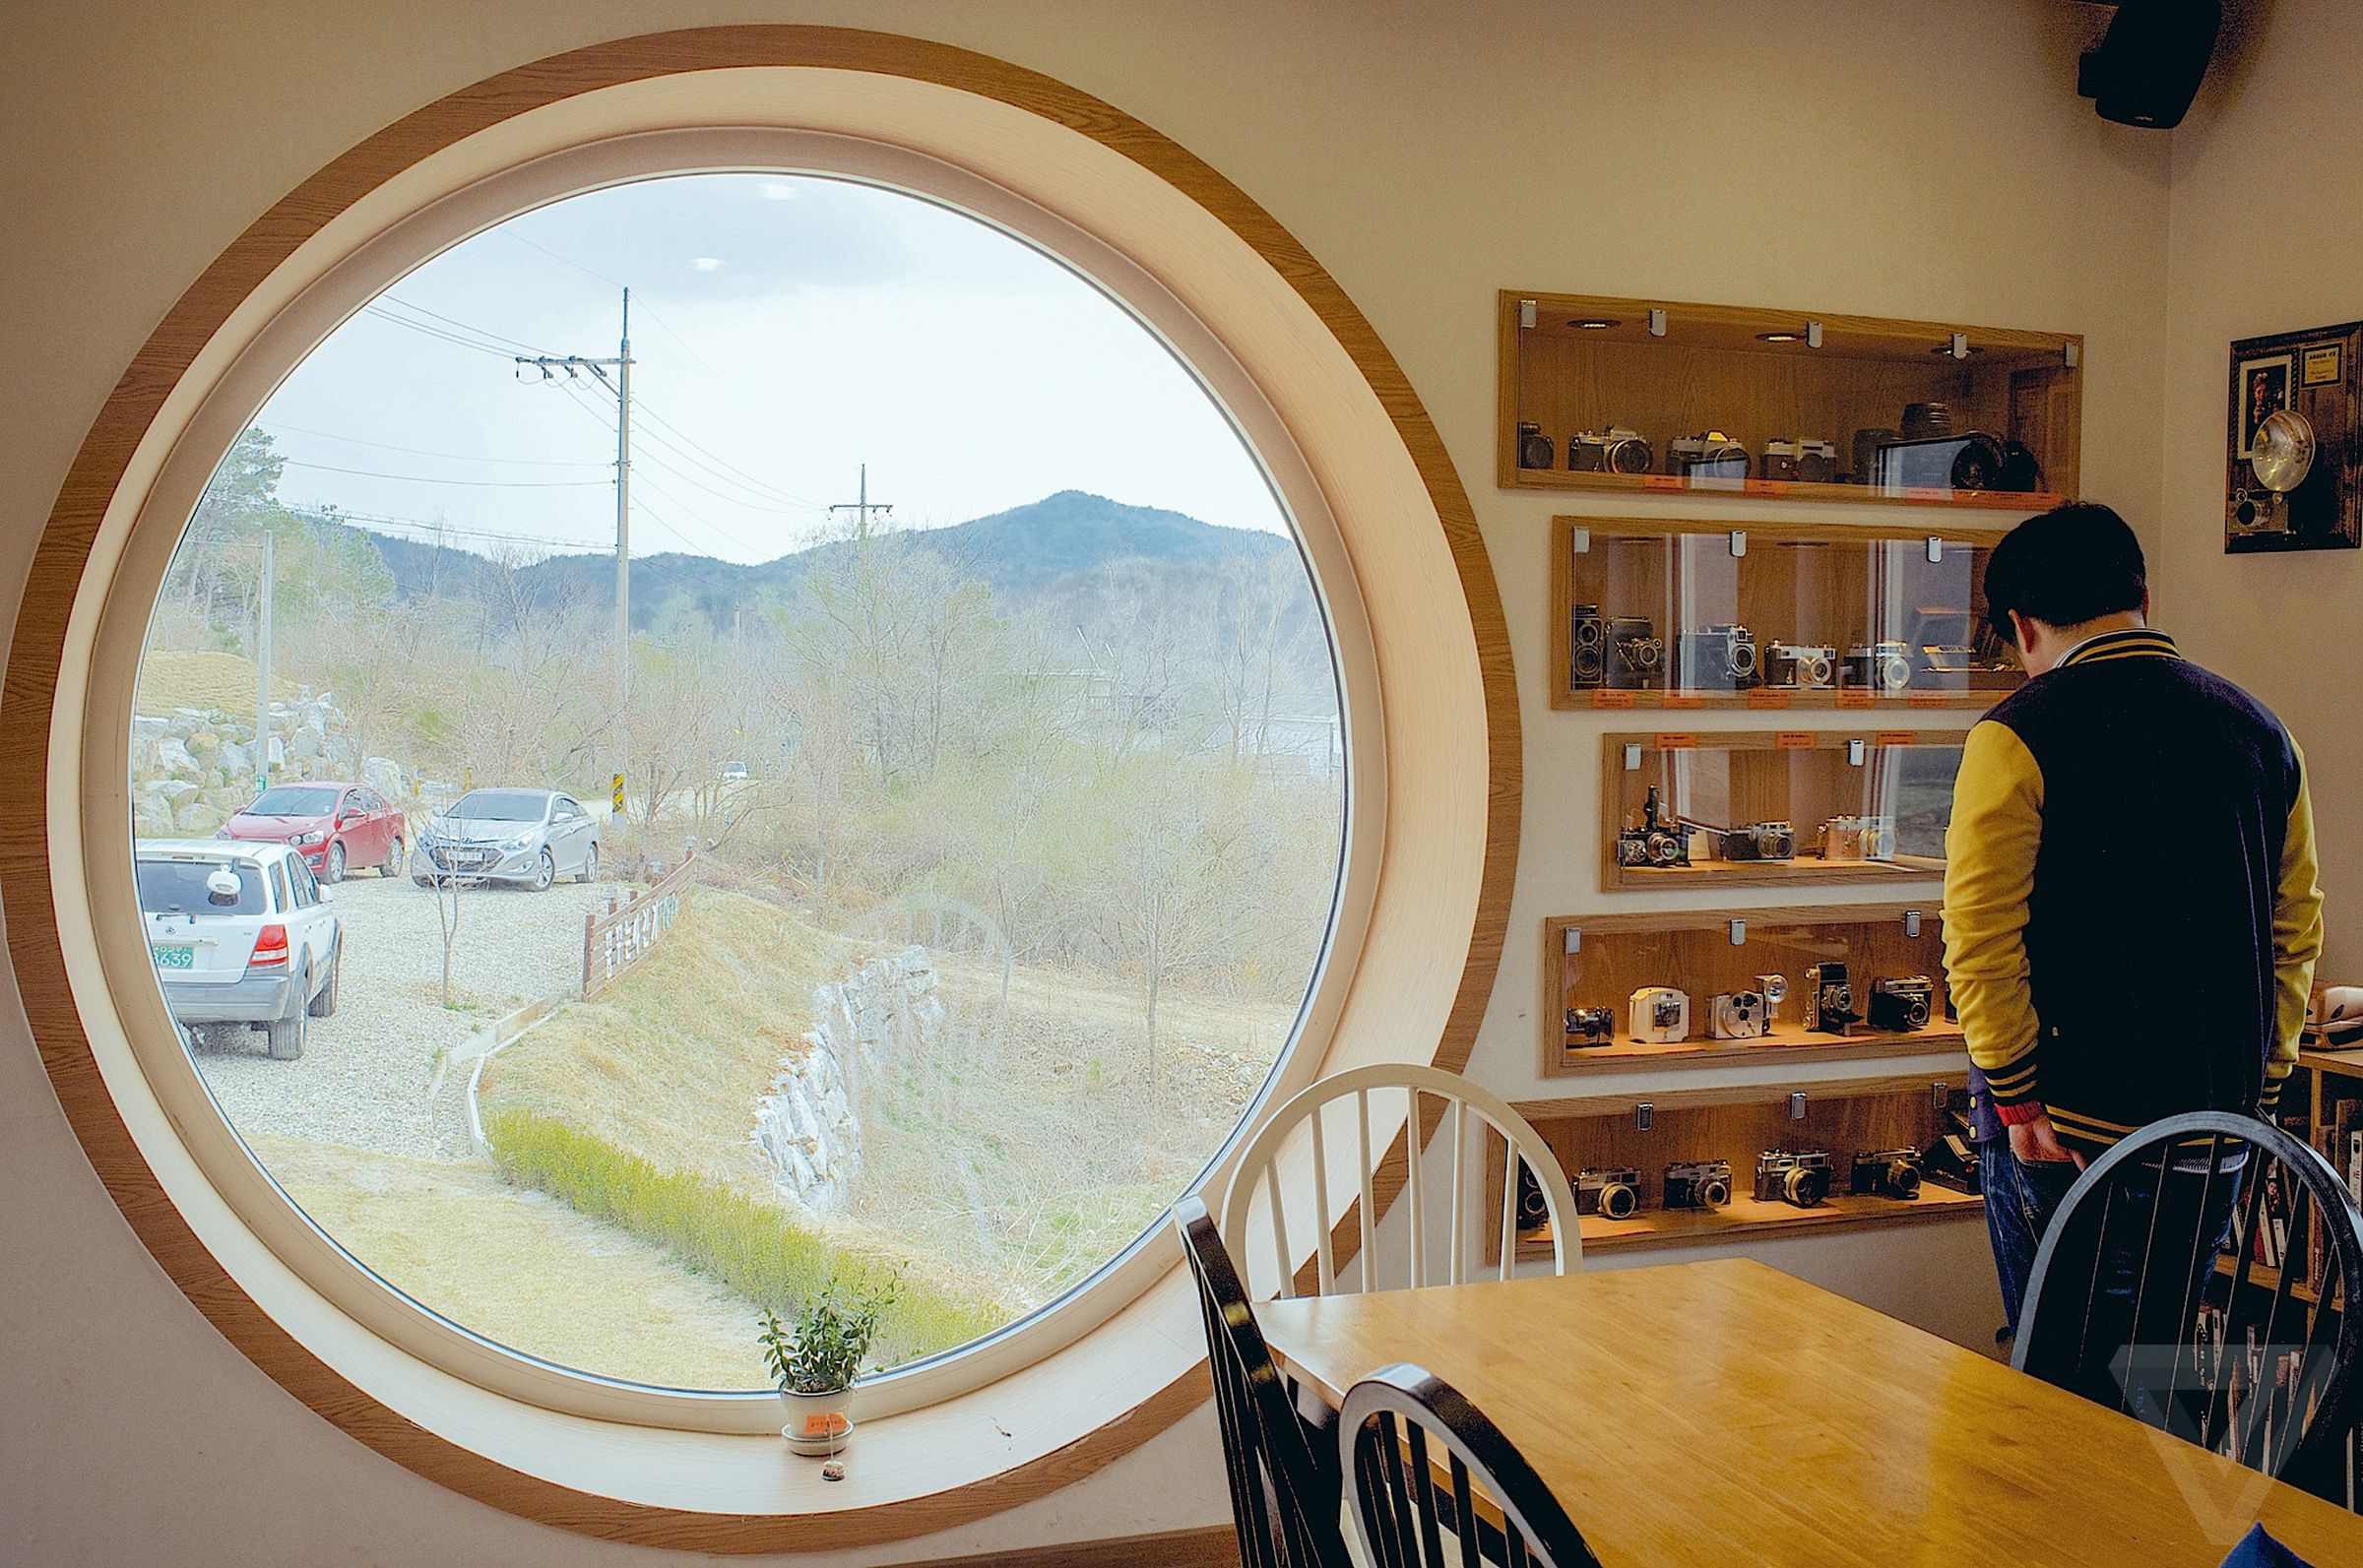 Photos from South Korea's Dreamy Camera Cafe